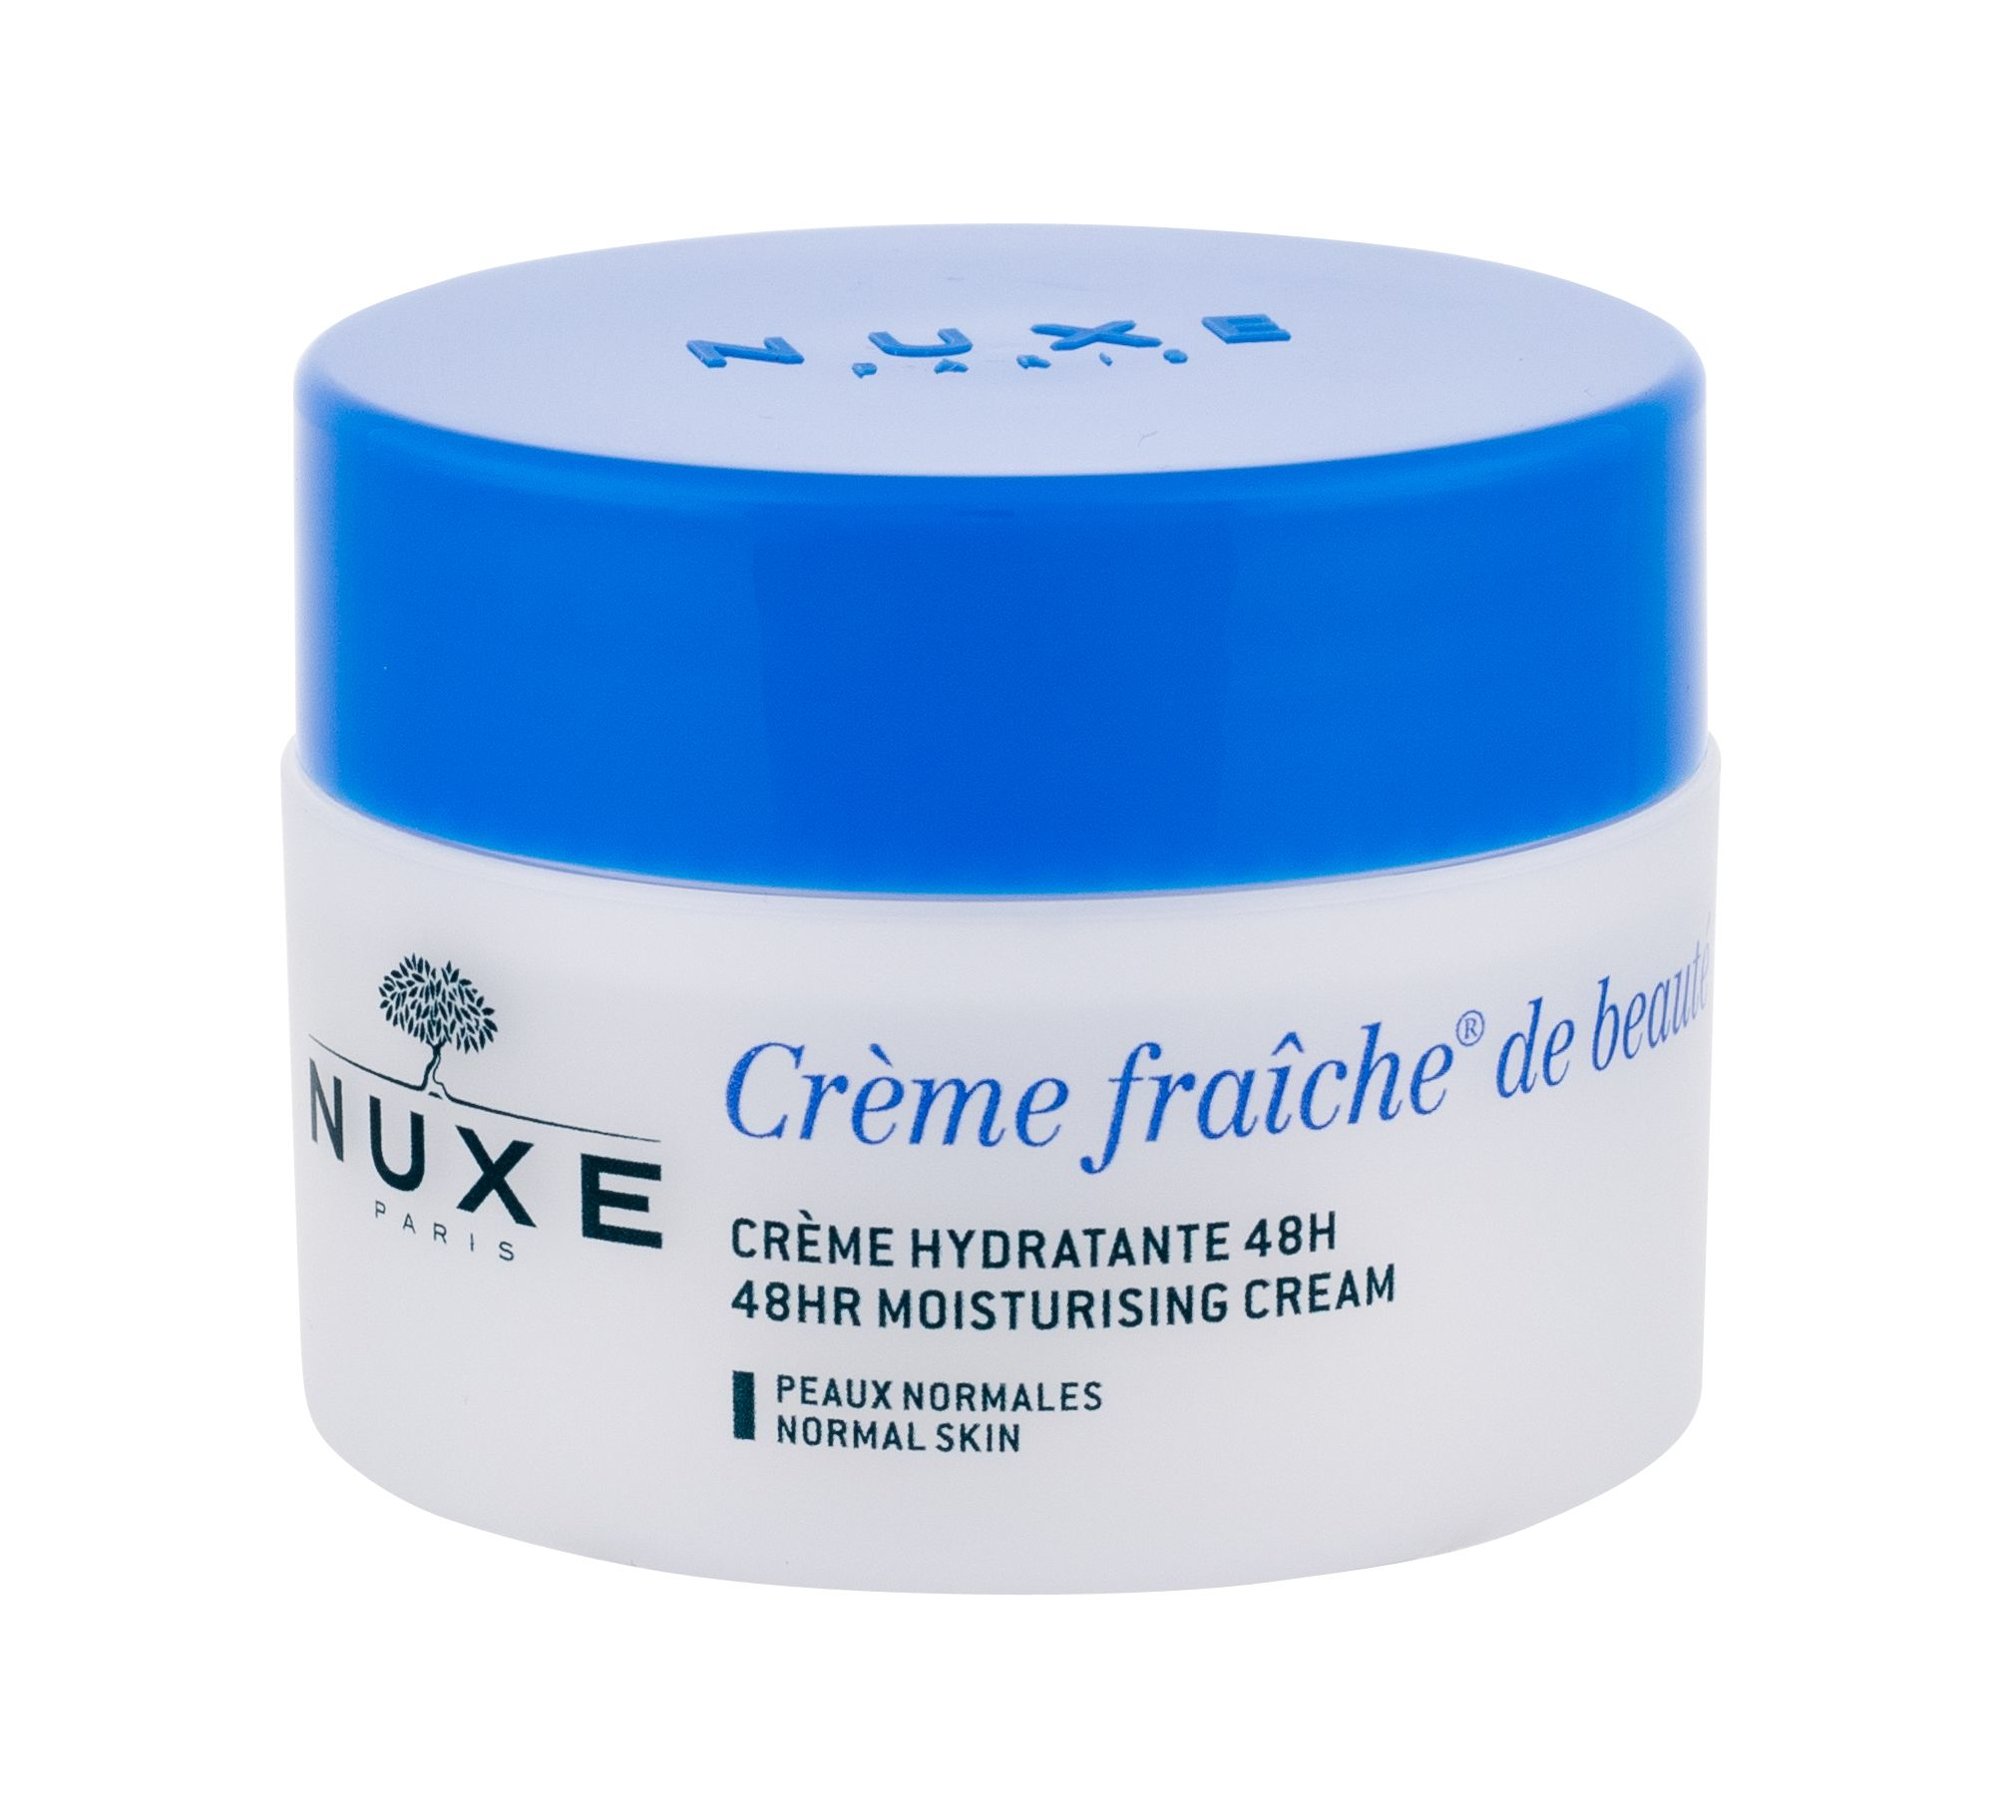 Nuxe Creme Fraiche 48HR Moisturising Cream